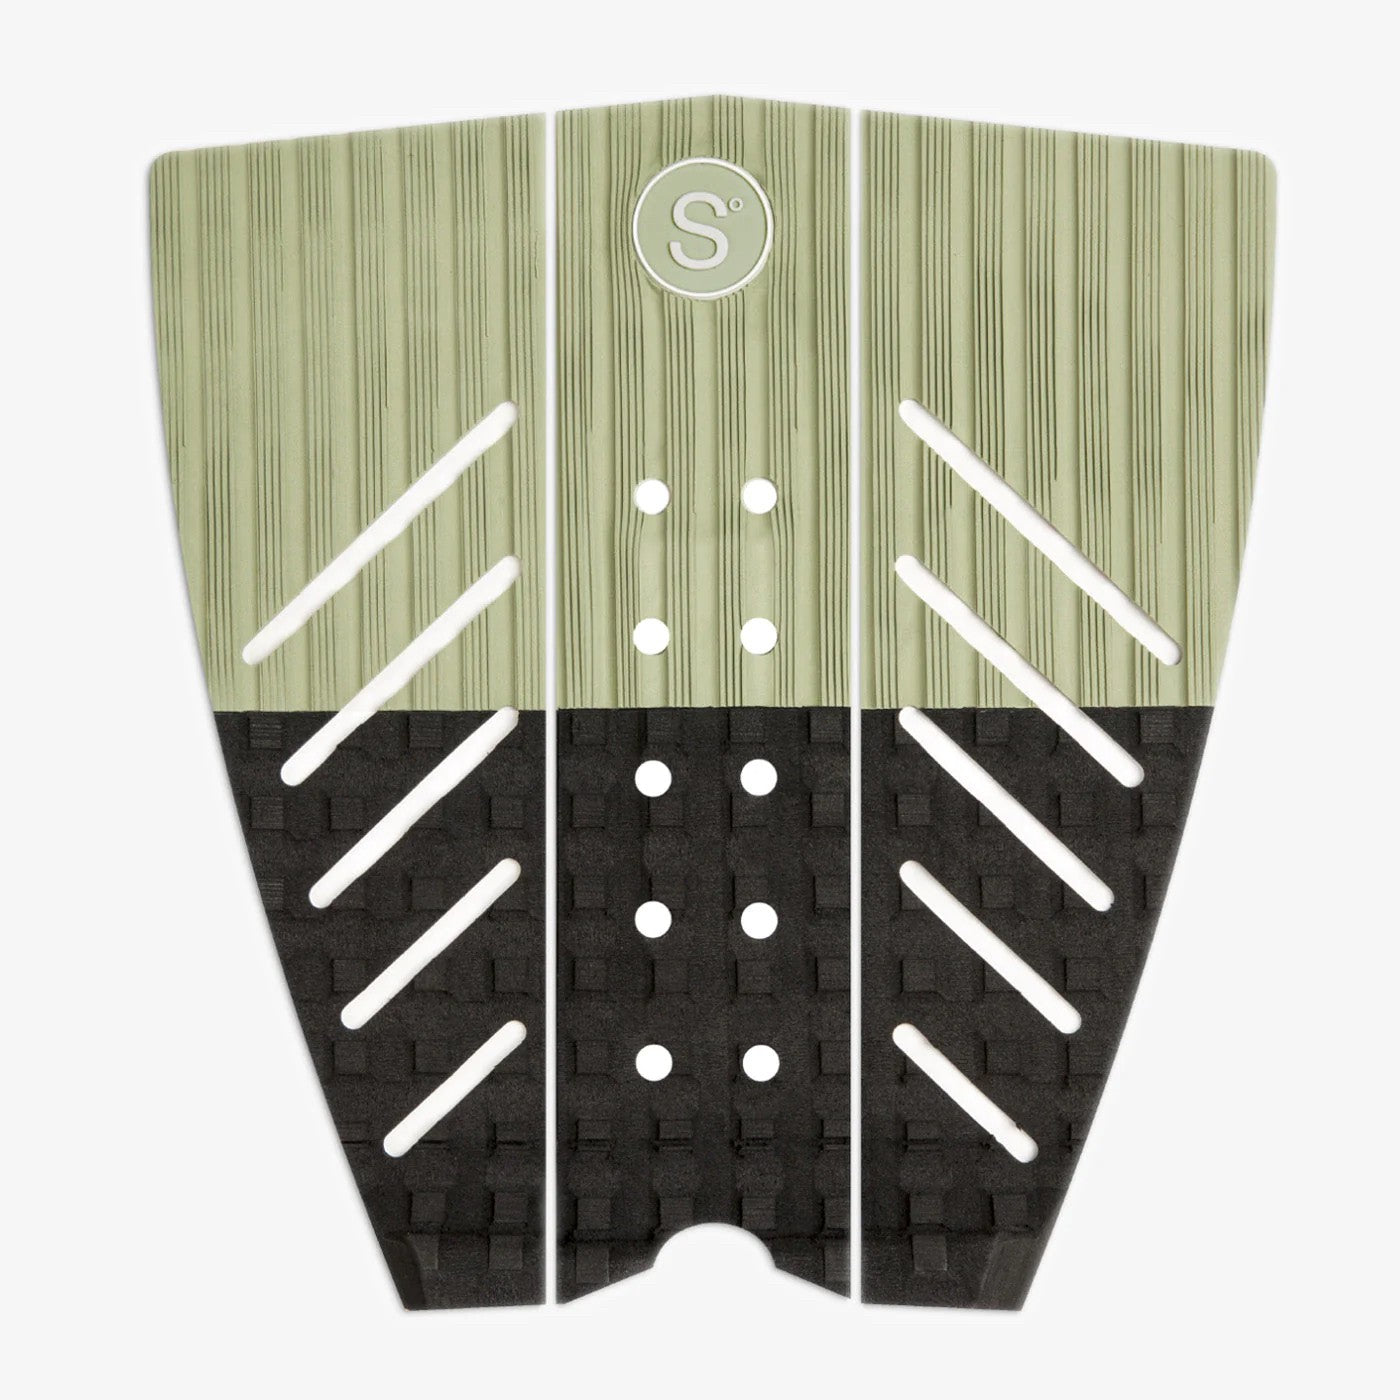 SYMPL NO 4 - Traction Pad Surf 3 piezas - Verde / Negro